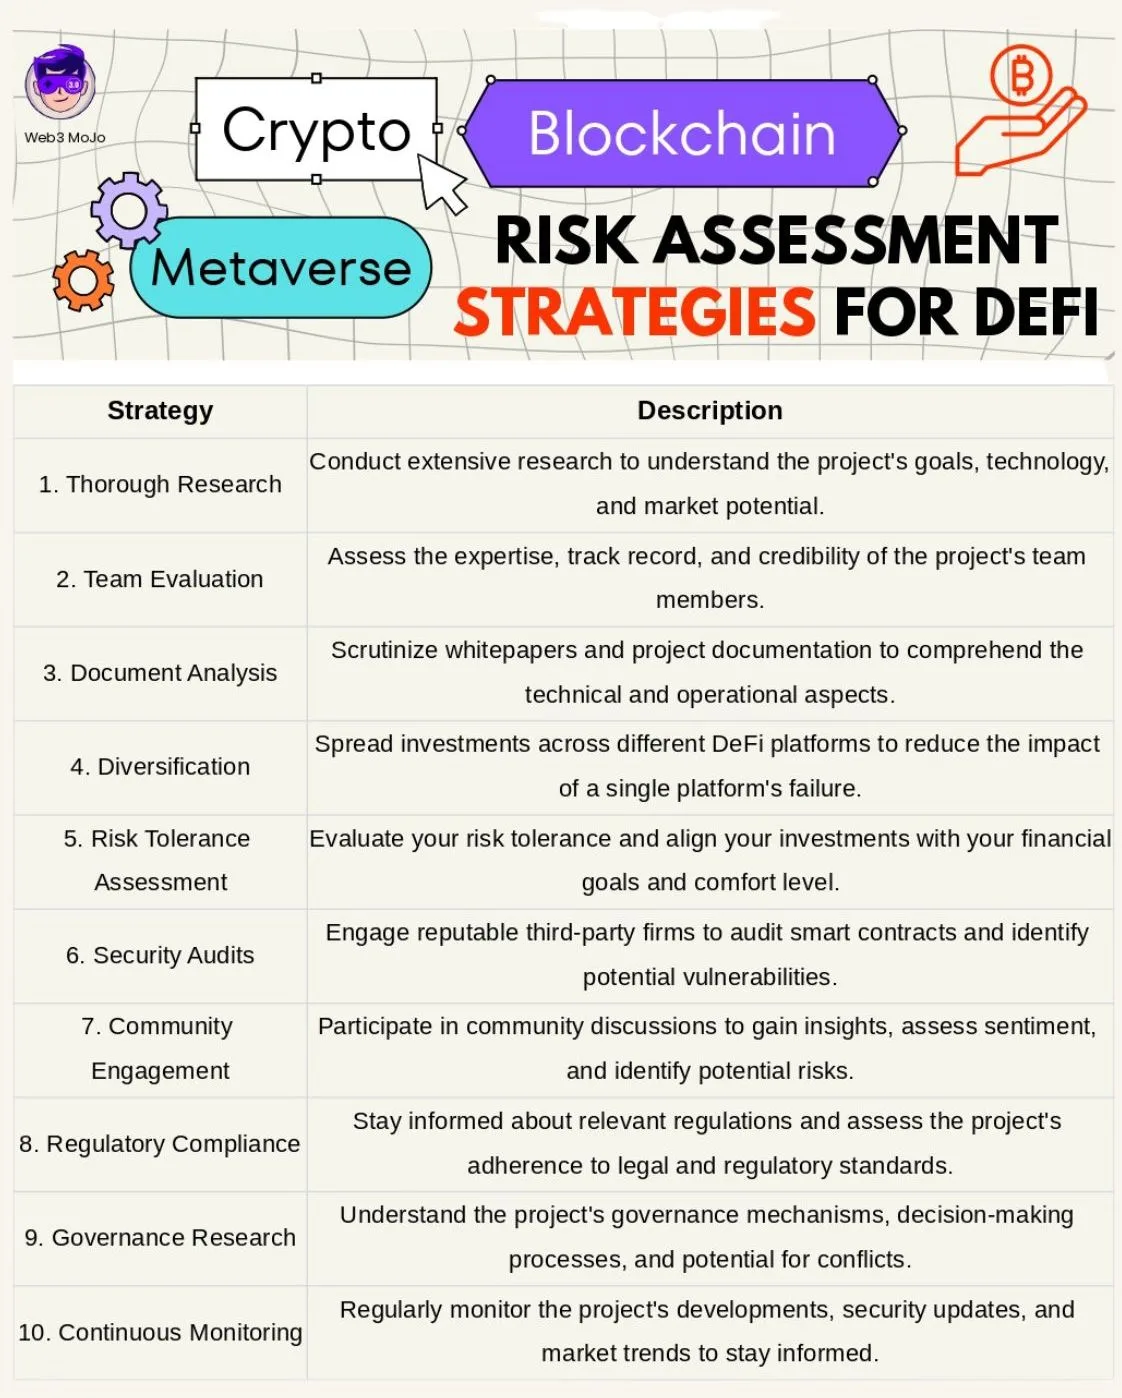 risk assessment strategies for DeFi